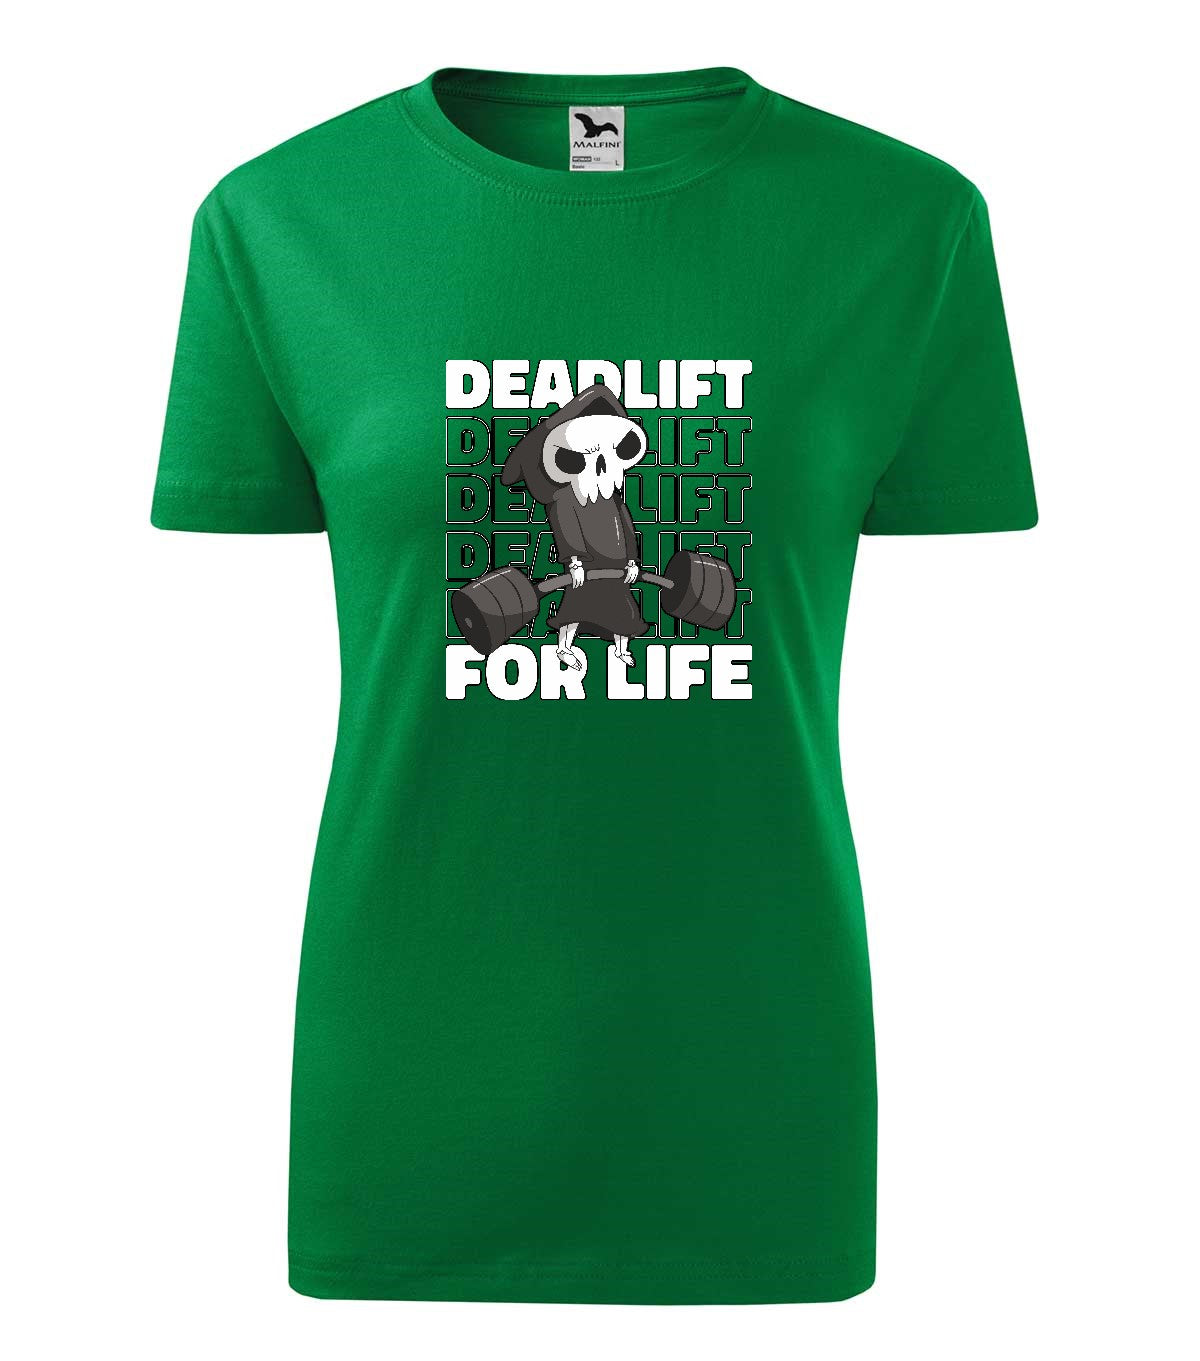 Deadlift női technikai póló